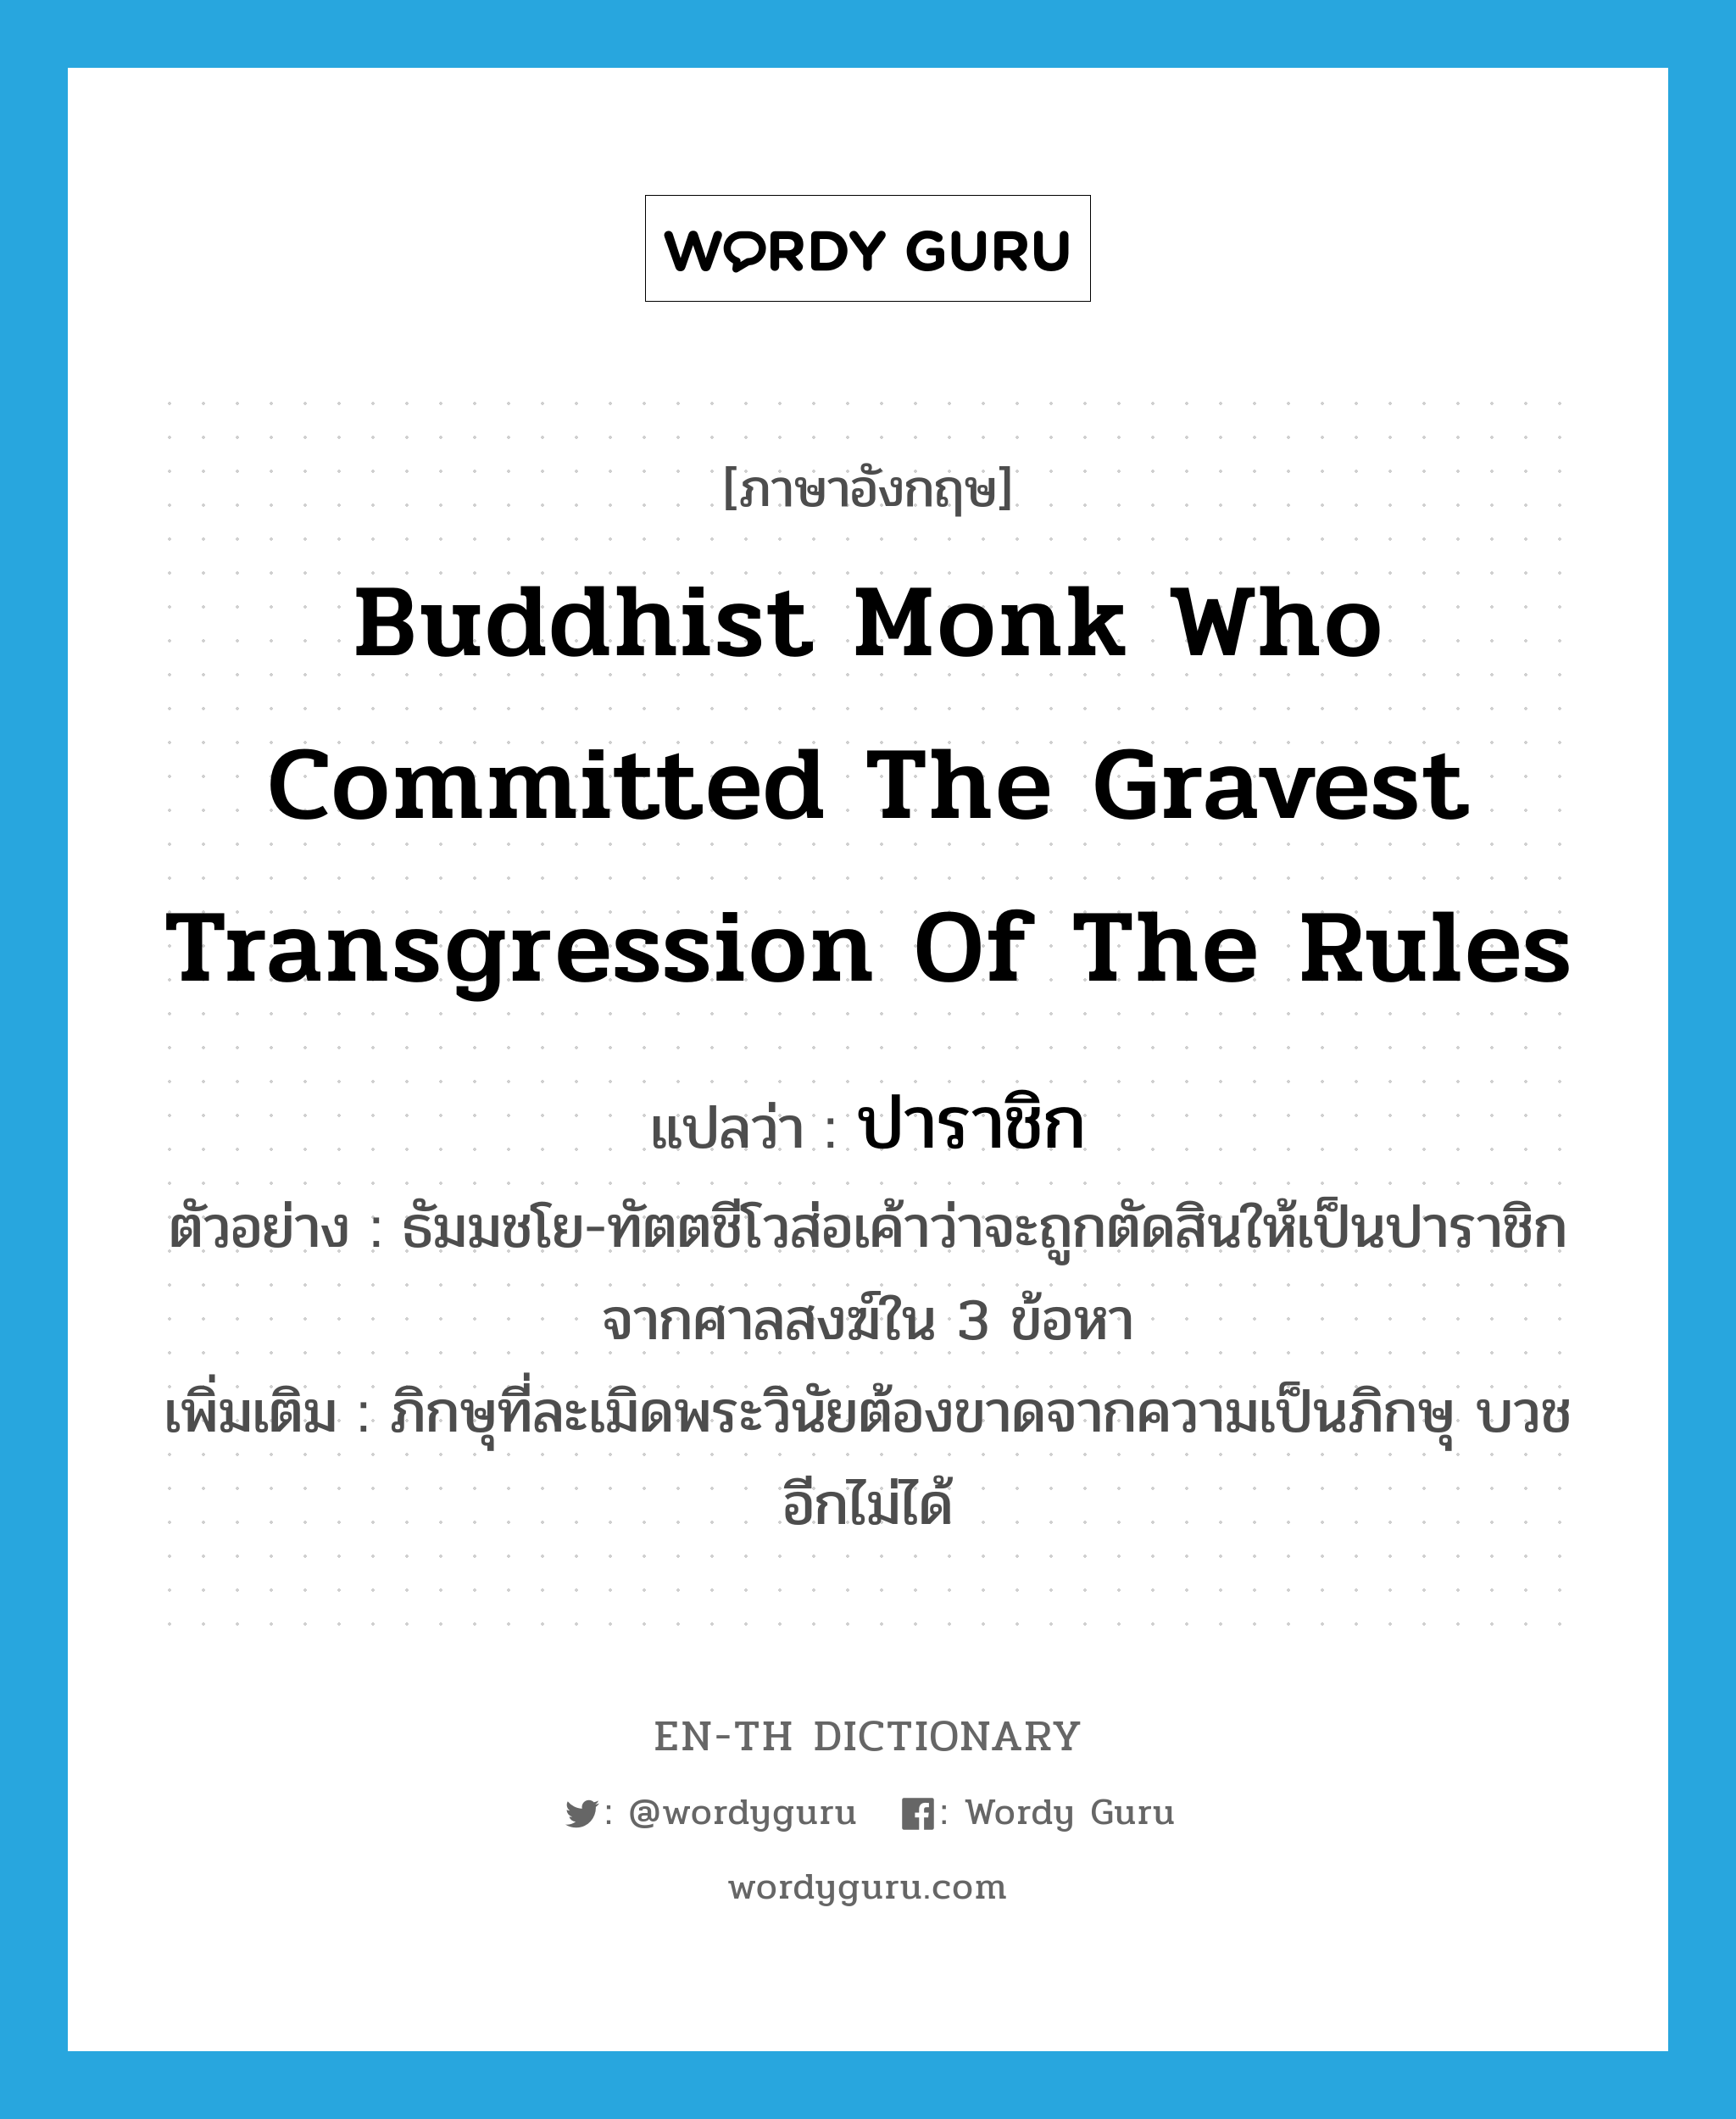 ปาราชิก ภาษาอังกฤษ?, คำศัพท์ภาษาอังกฤษ ปาราชิก แปลว่า Buddhist monk who committed the gravest transgression of the rules ประเภท N ตัวอย่าง ธัมมชโย-ทัตตชีโวส่อเค้าว่าจะถูกตัดสินให้เป็นปาราชิกจากศาลสงฆ์ใน 3 ข้อหา เพิ่มเติม ภิกษุที่ละเมิดพระวินัยต้องขาดจากความเป็นภิกษุ บวชอีกไม่ได้ หมวด N